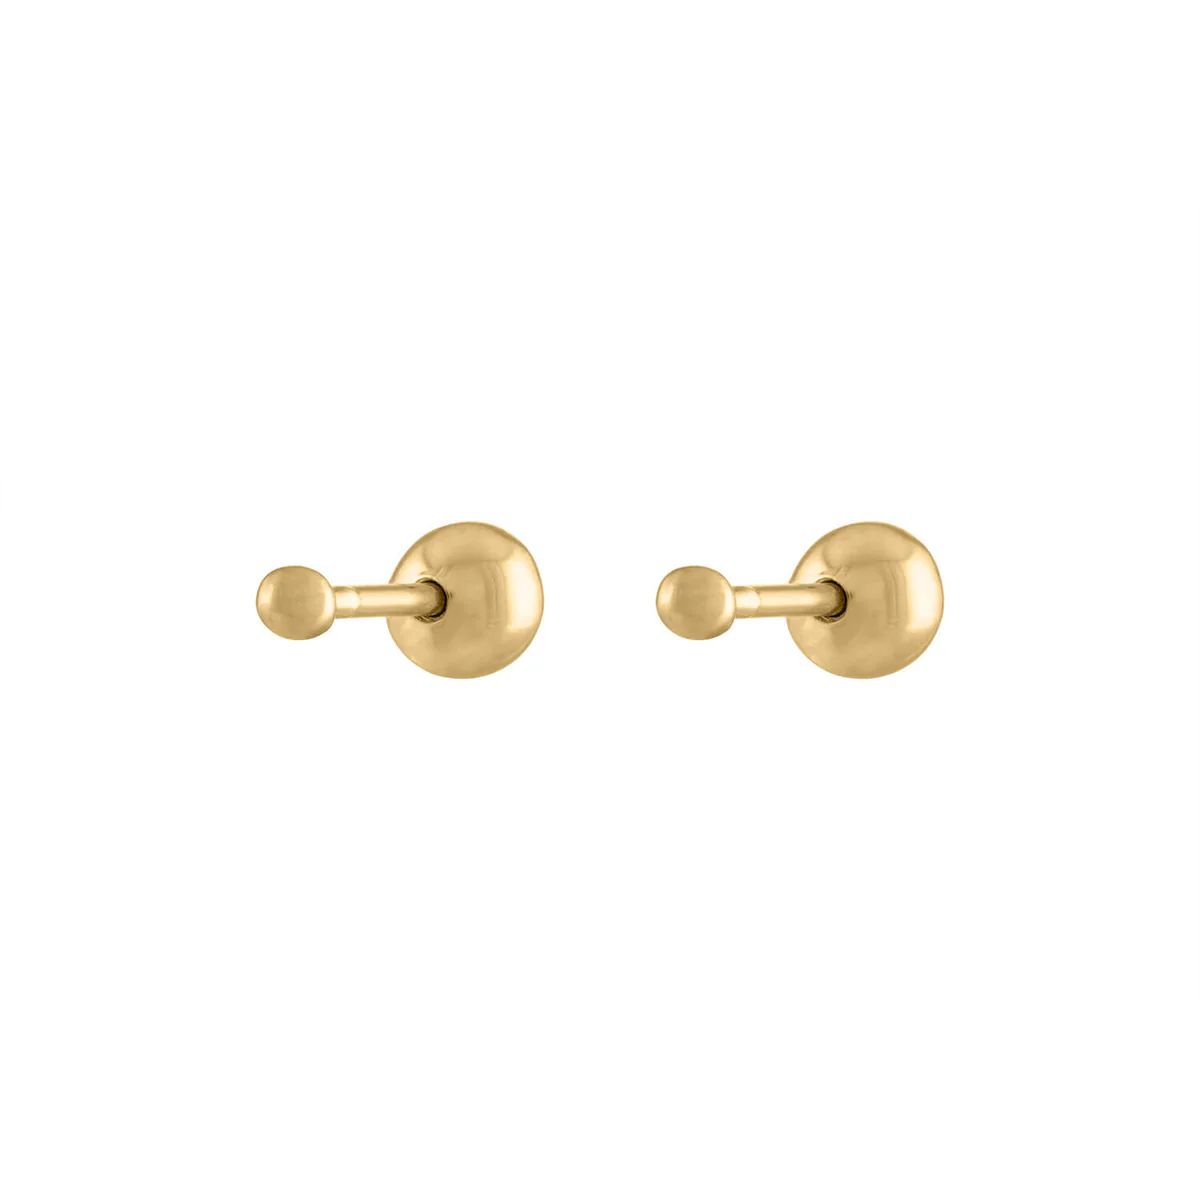 Tiny Secret Ball Back Earrings in 14k Gold | Maison Miru